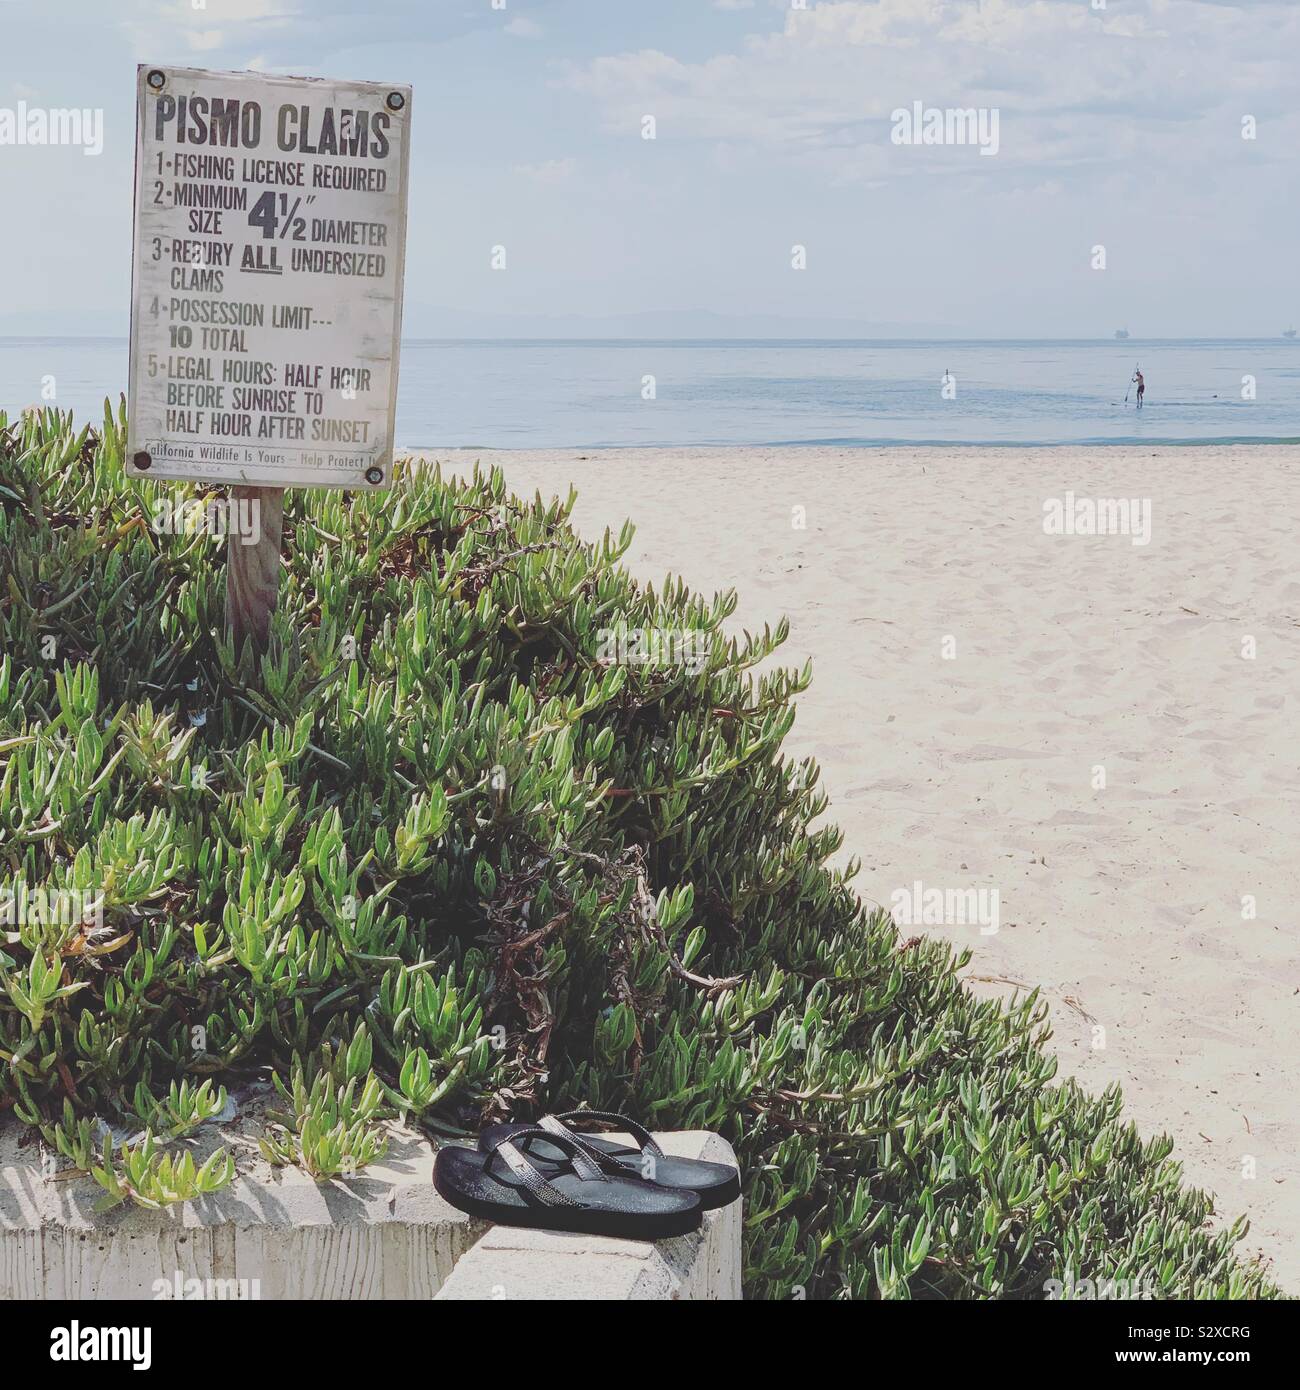 Tongs reste près d'un signe sur la pêche de palourdes Pismo. Une personne est vu debout dans l'eau au loin. Carpinteria State Beach, Oakland, California, United States Banque D'Images